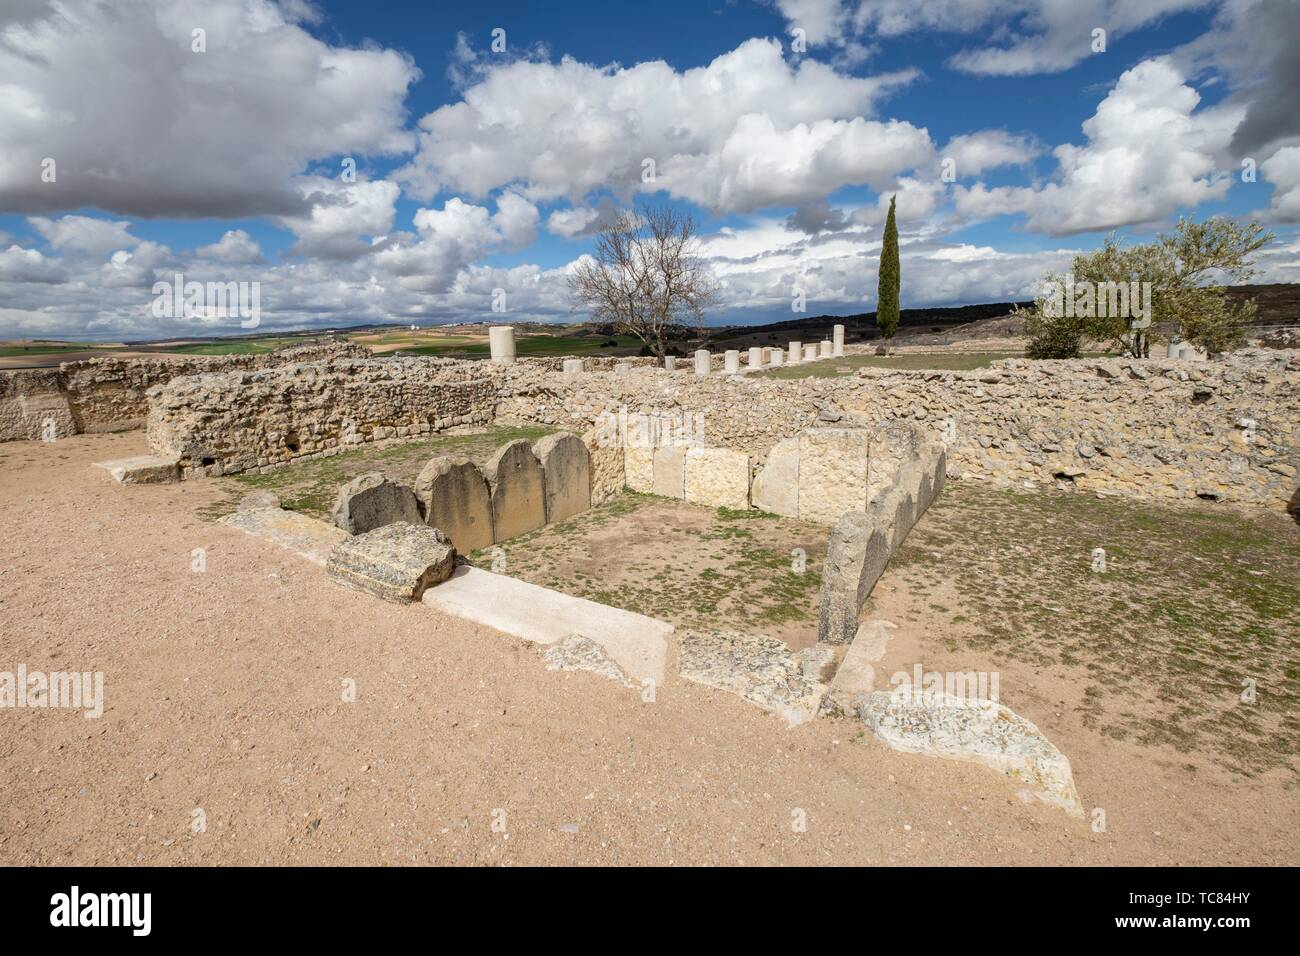 Termas Monumentales, parque arqueológico de Segóbriga, Saelices, Cuenca, Castilla-La Mancha, Spain. Stock Photo